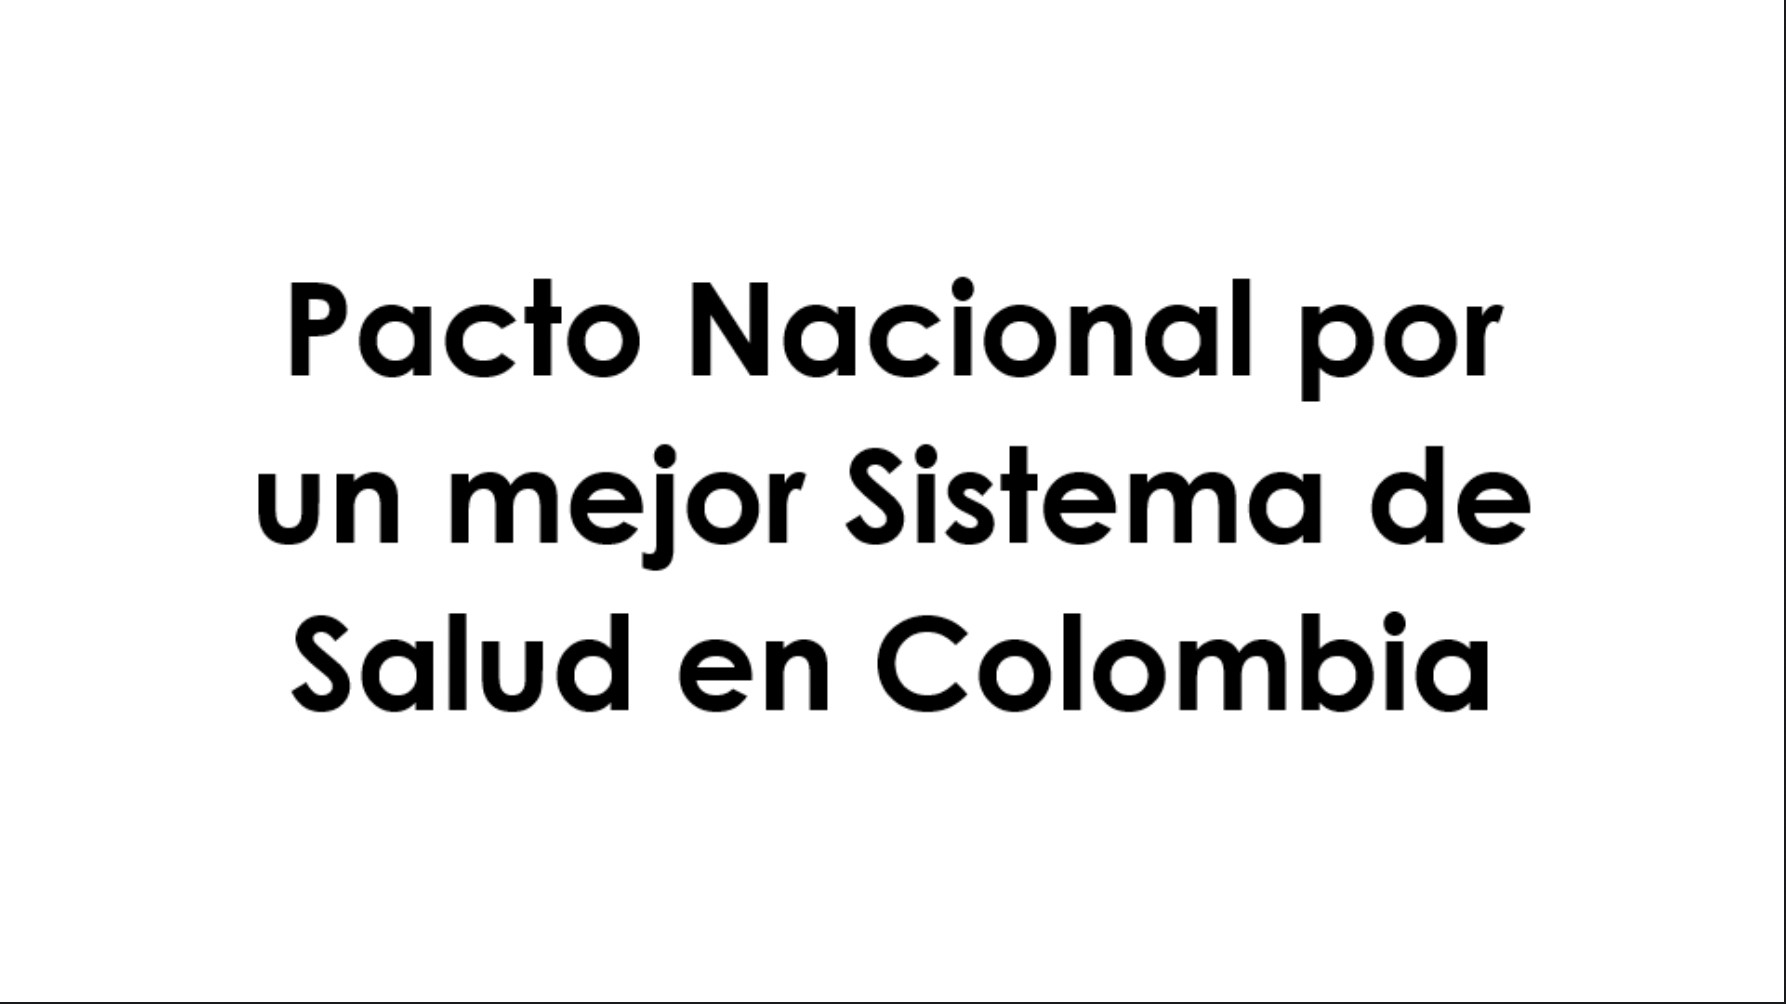 PACTO NACIONAL POR UN MEJOR SISTEMA DE SALUD EN COLOMBIA